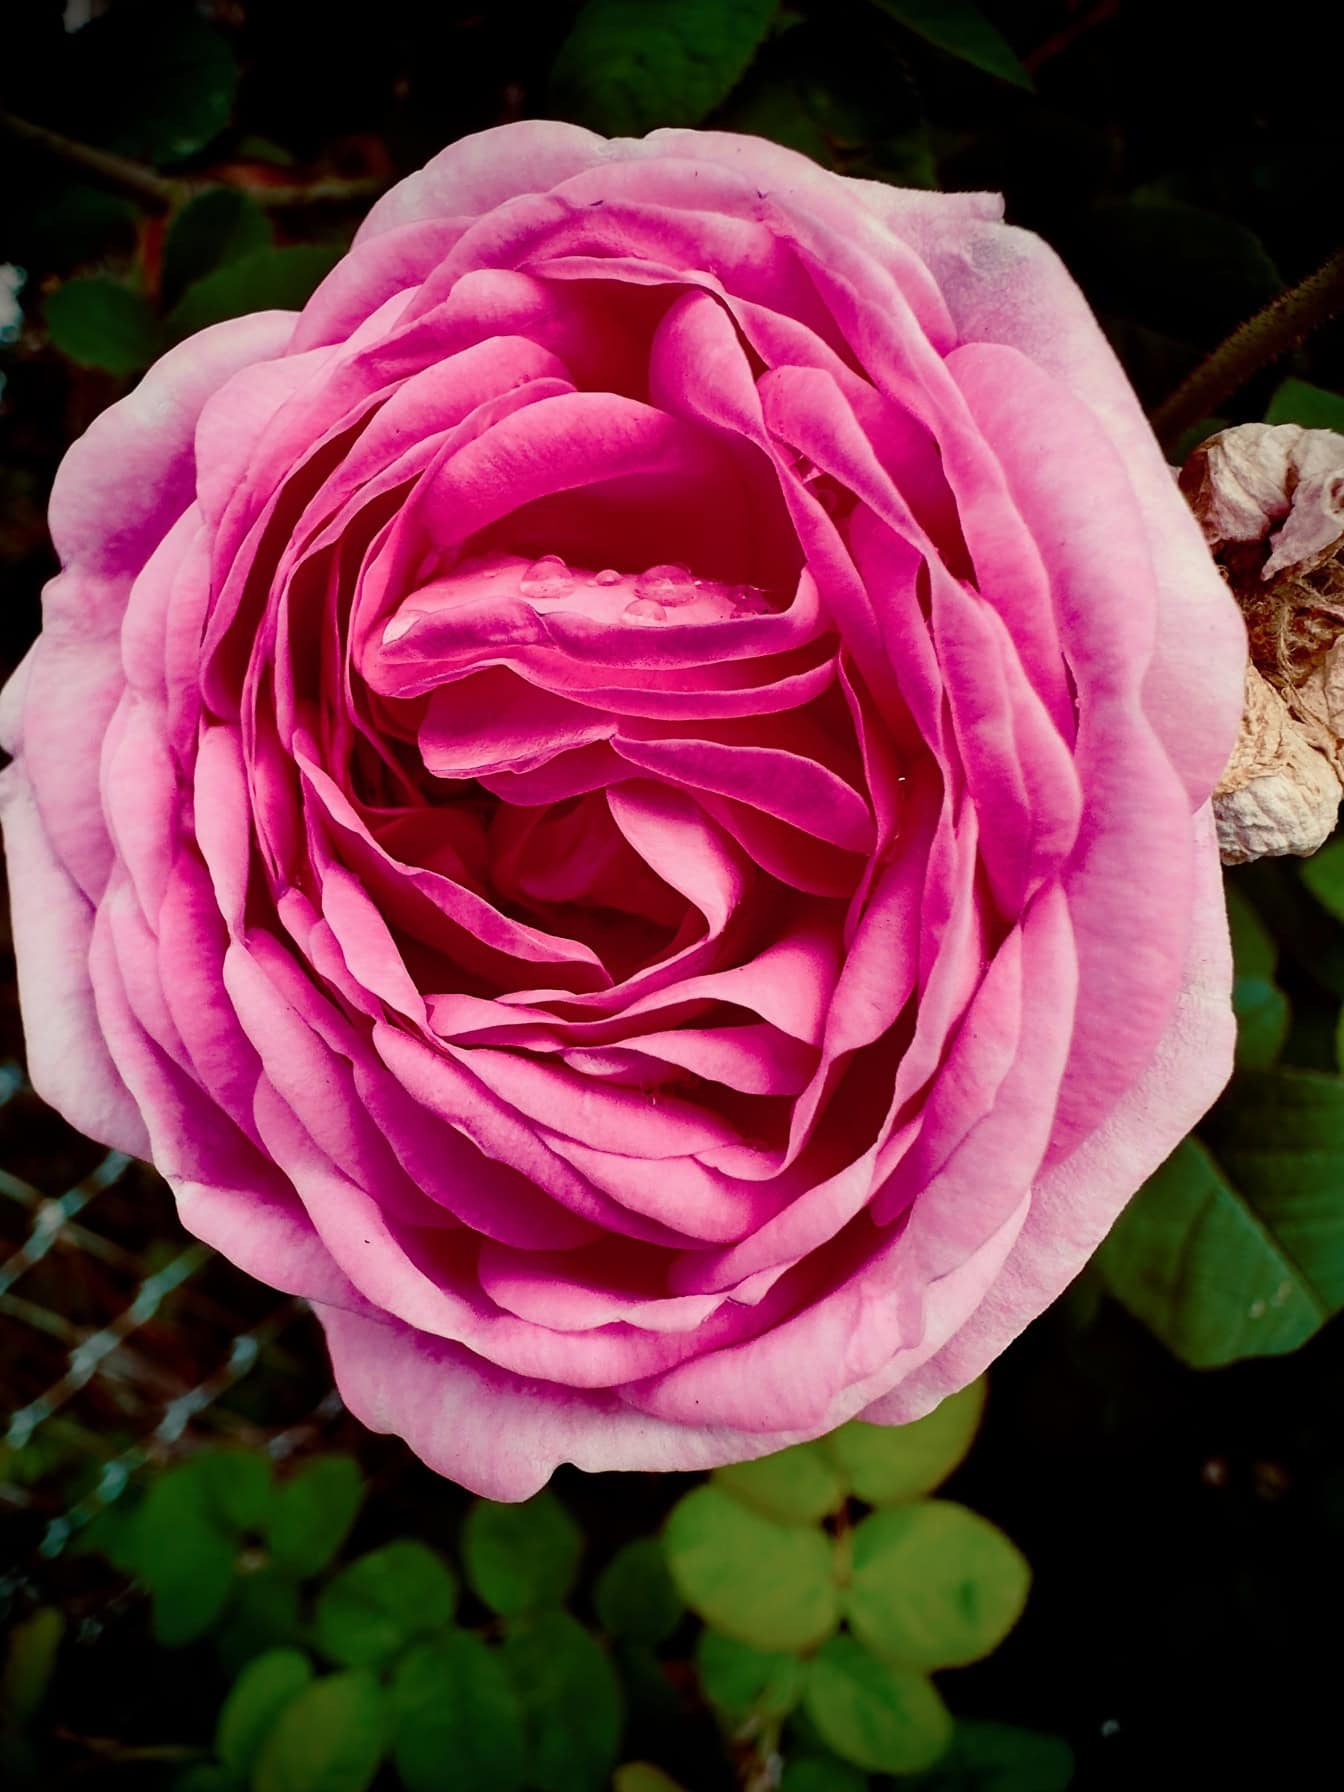 Close-up mawar Inggris merah muda yang indah dengan tetesan embun di kelopak